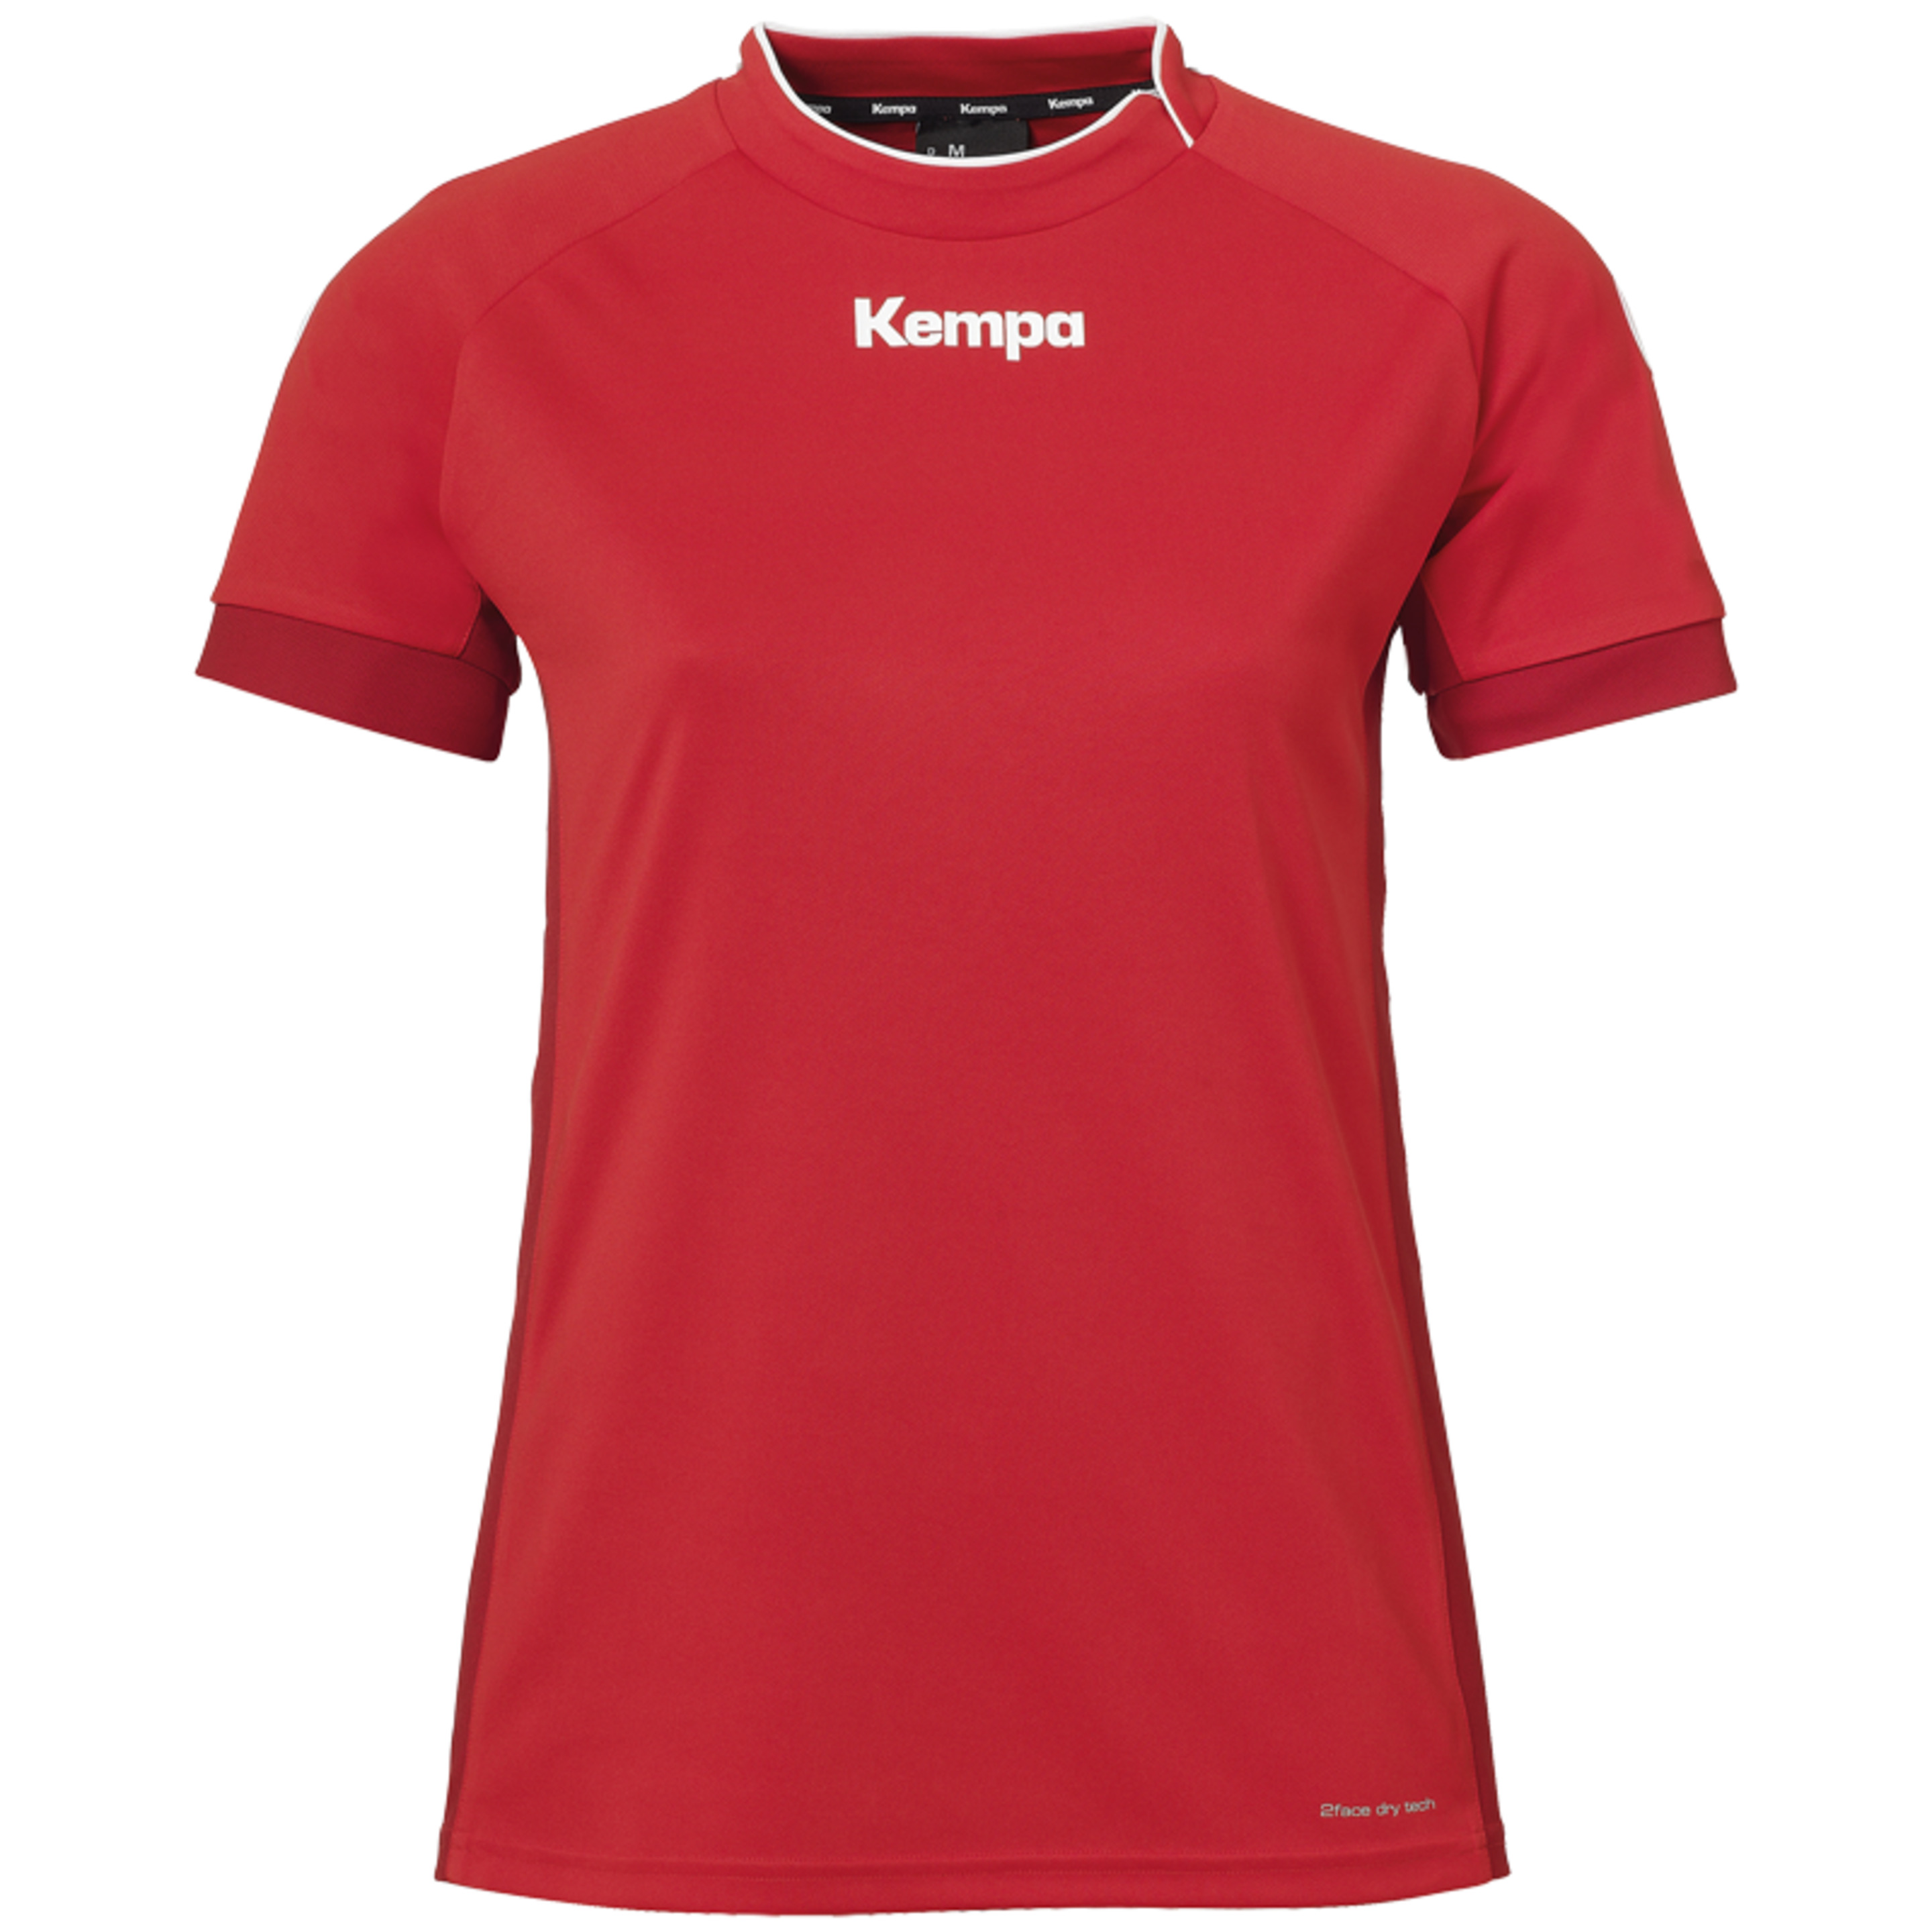 Prime Shirt Women Rojo/rojo Chili Kempa